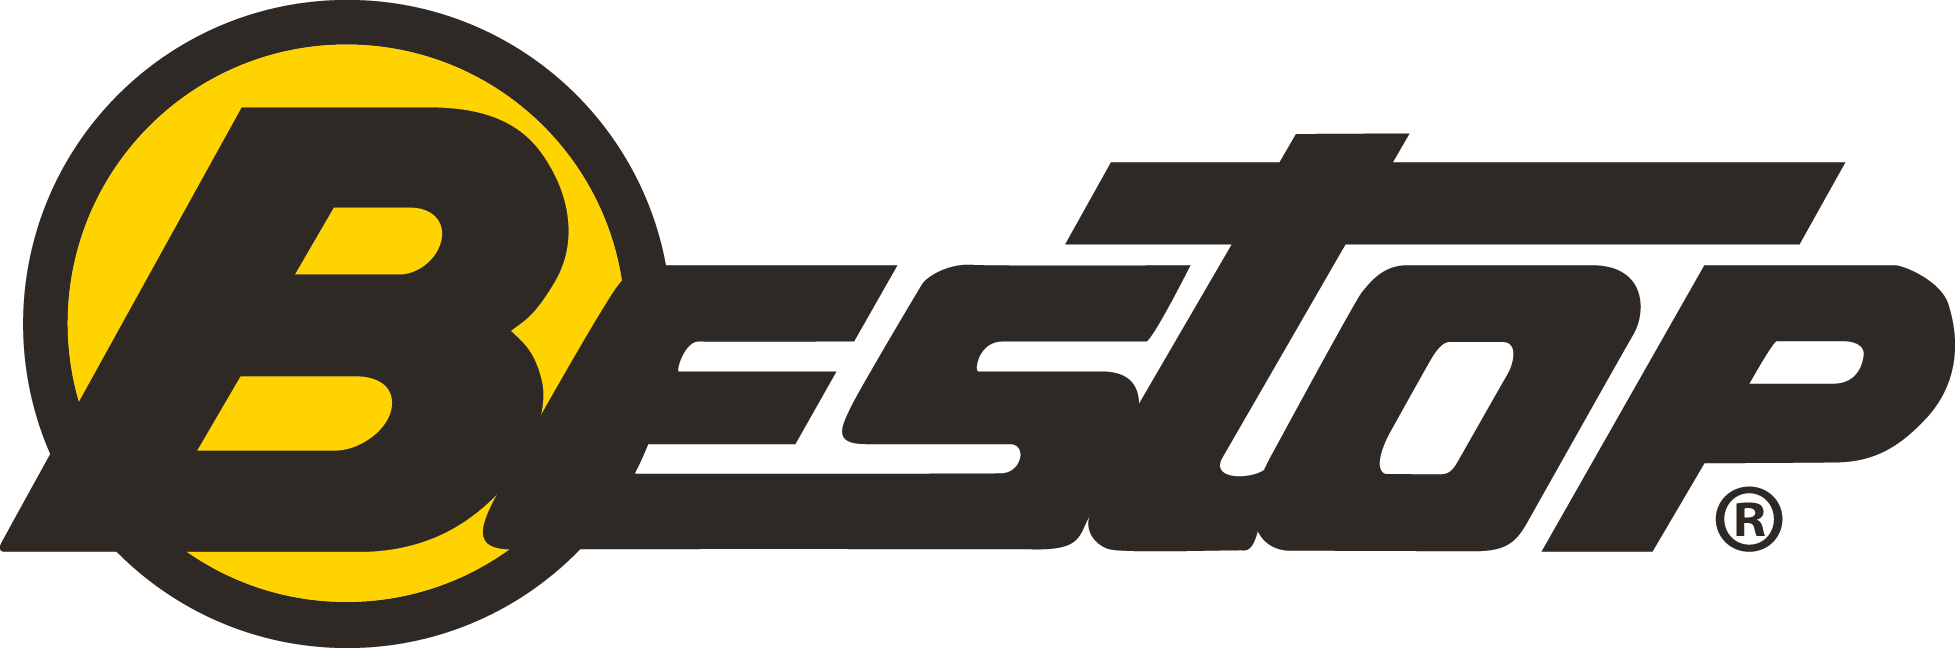 Bestop Logo - Bestop Parts & Accessories